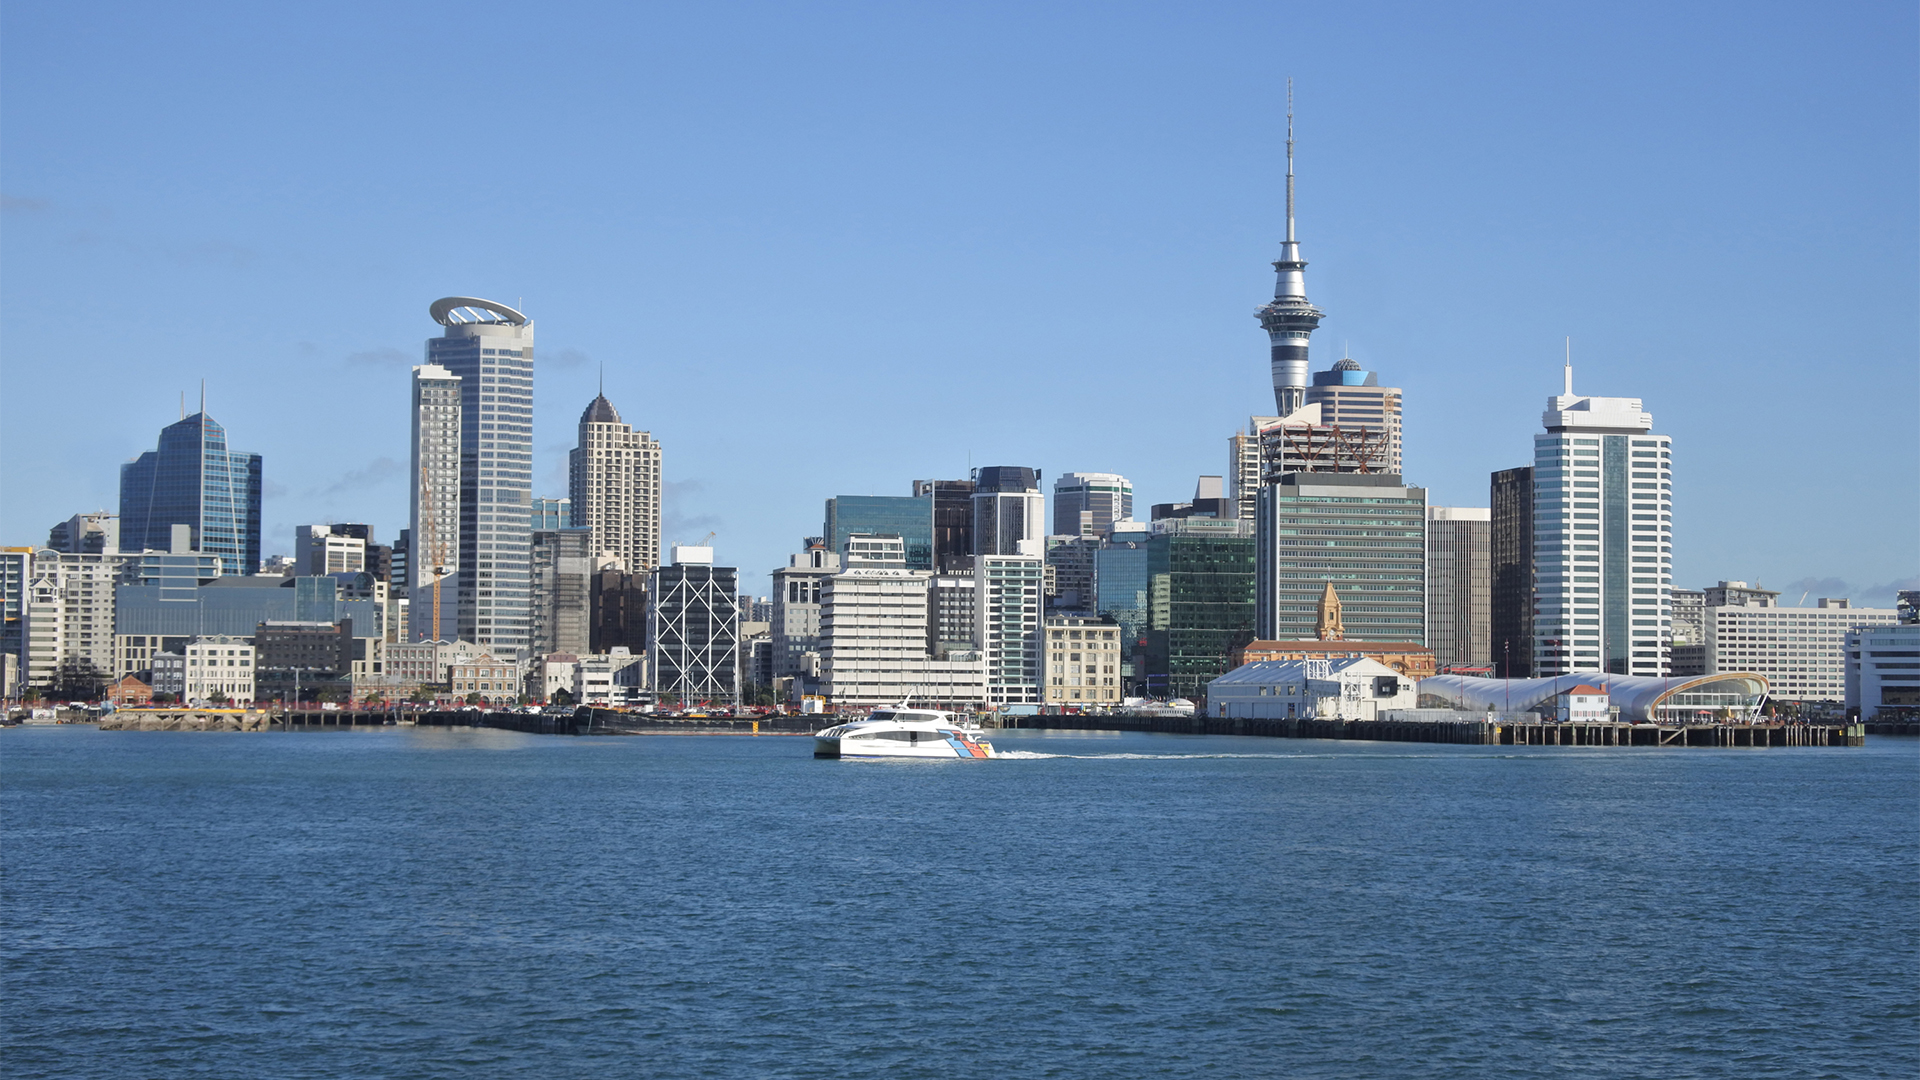 City Skyline von Auckland, Neuseeland | picture alliance / Newscom